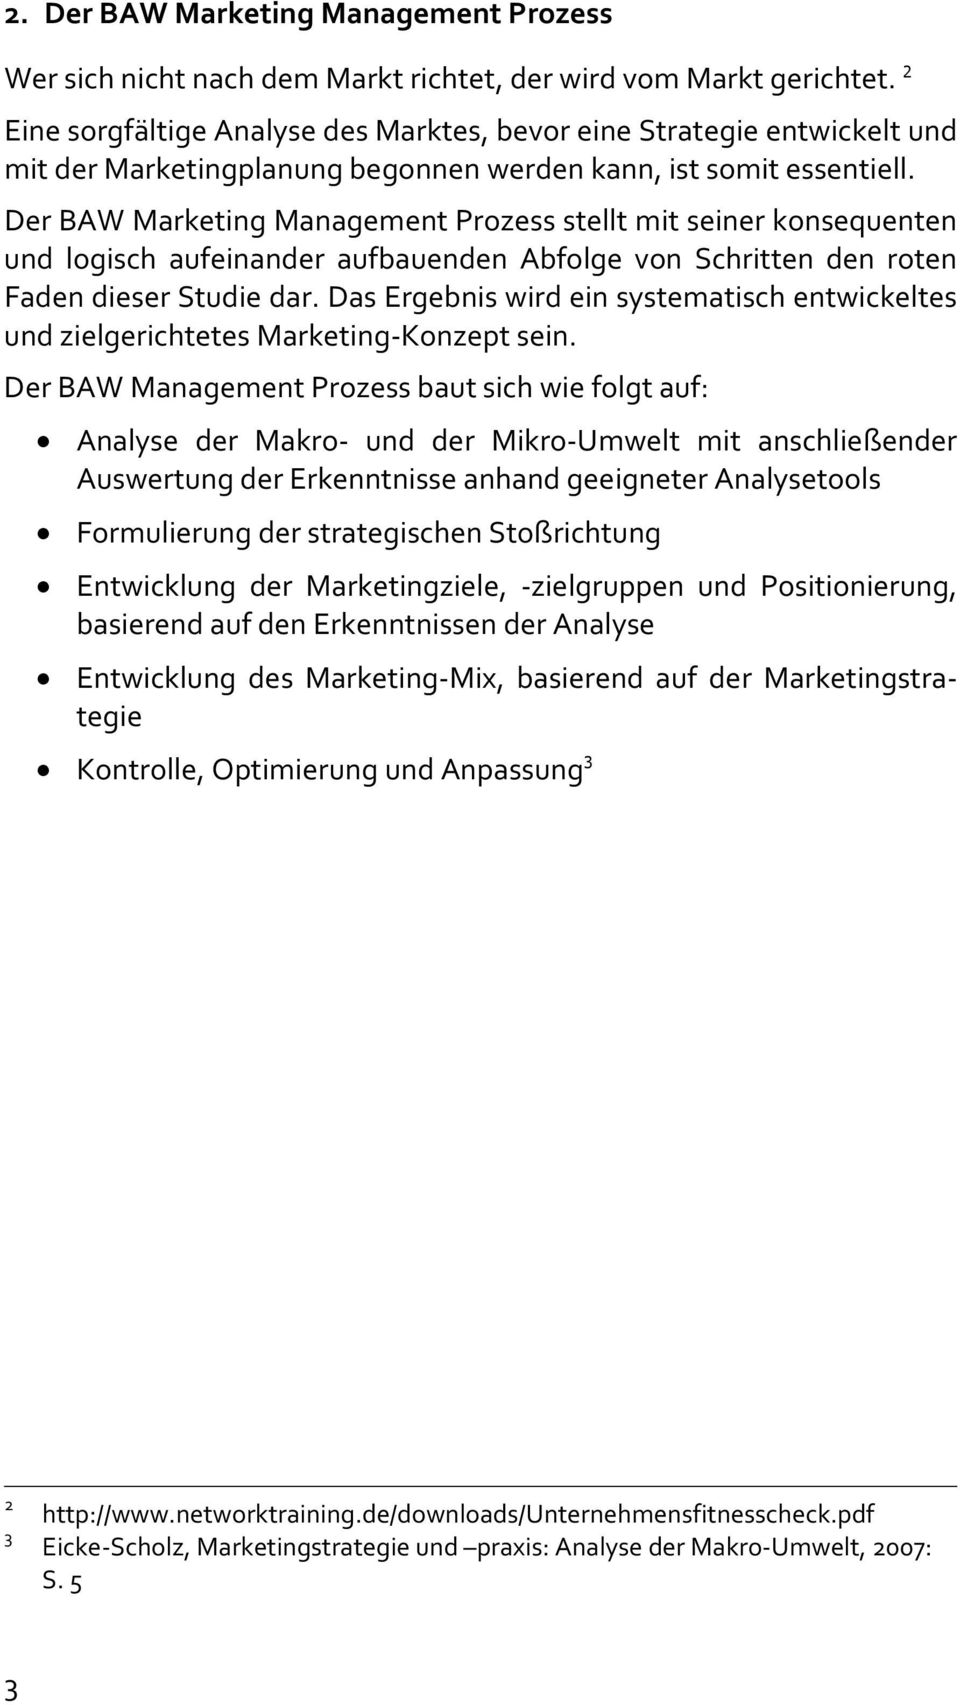 Der BAW Marketing Management Prozess stellt mit seiner konsequenten und logisch aufeinander aufbauenden Abfolge von Schritten den roten Faden dieser Studie dar.